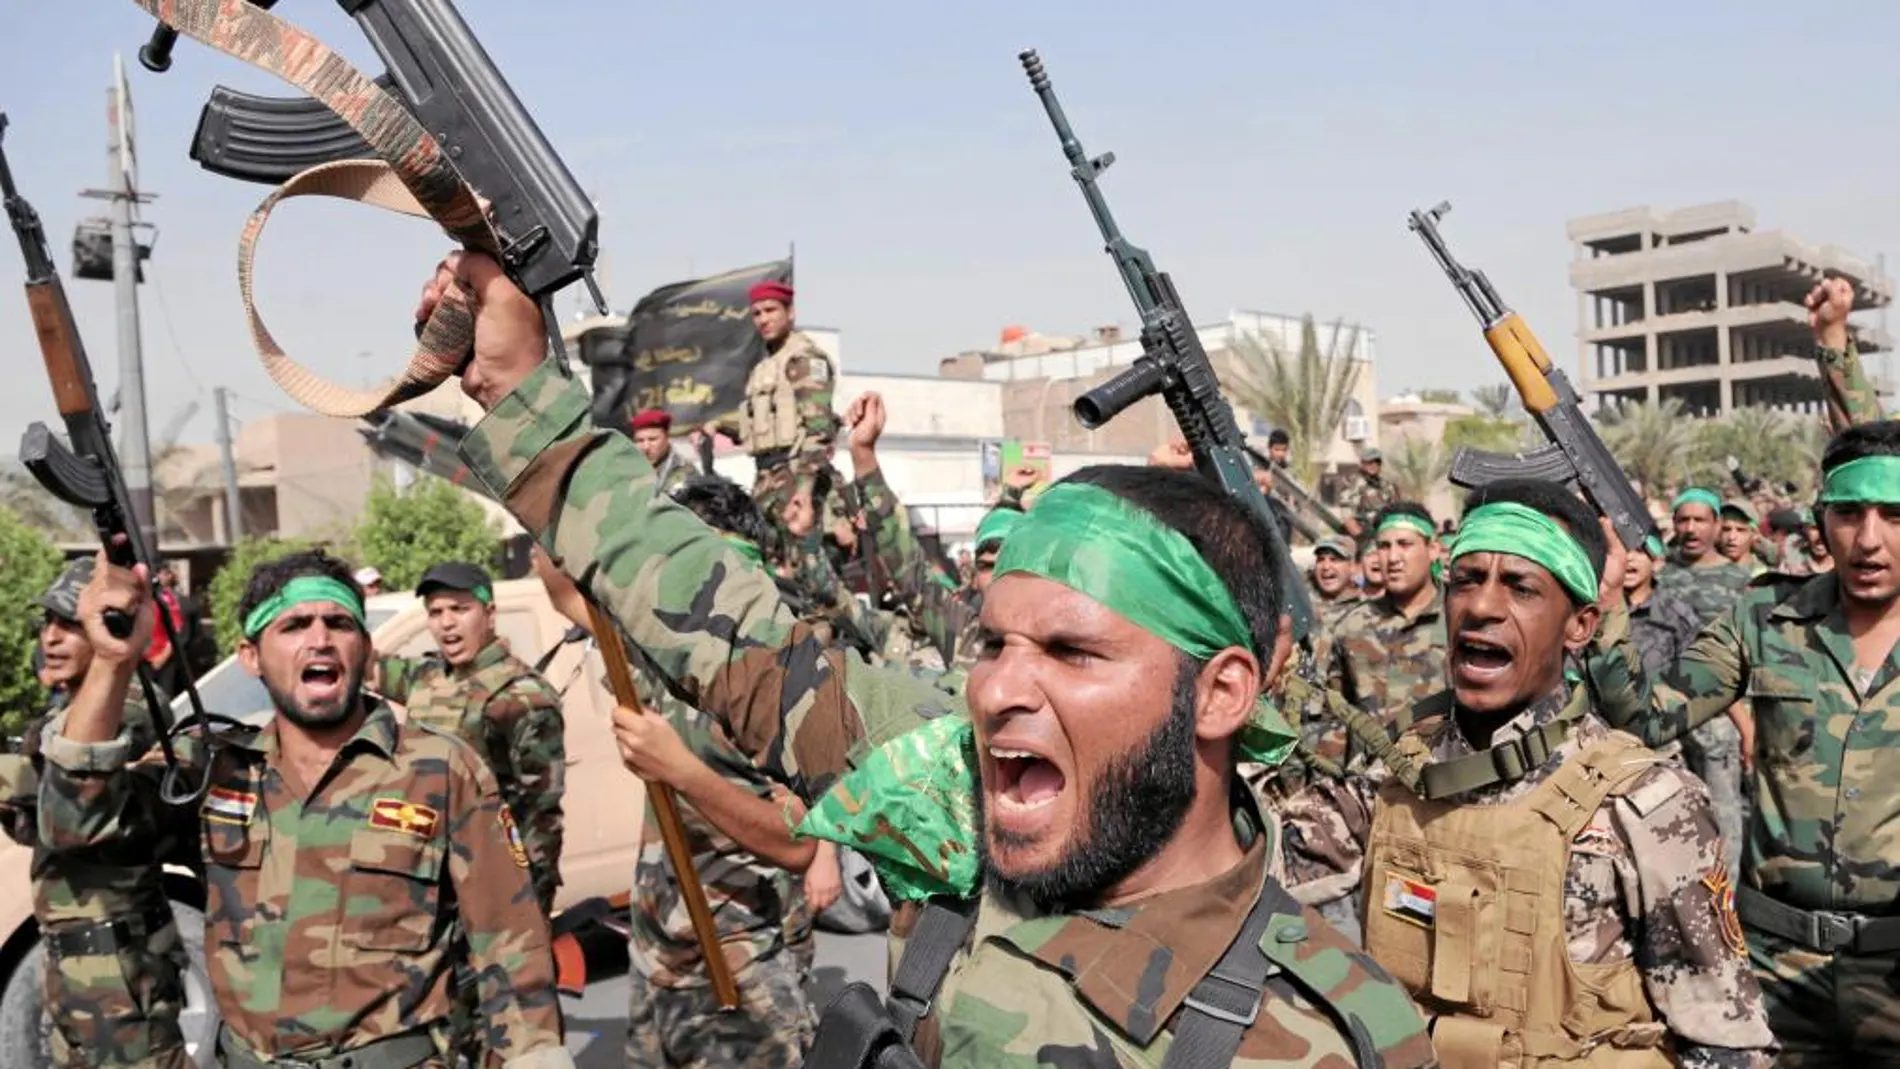 «BRIGADAS DE PAZ». Los milicianos levantan sus armas y corean en contra del EIIL, ayer en Ciudad Sadr, Bagdad